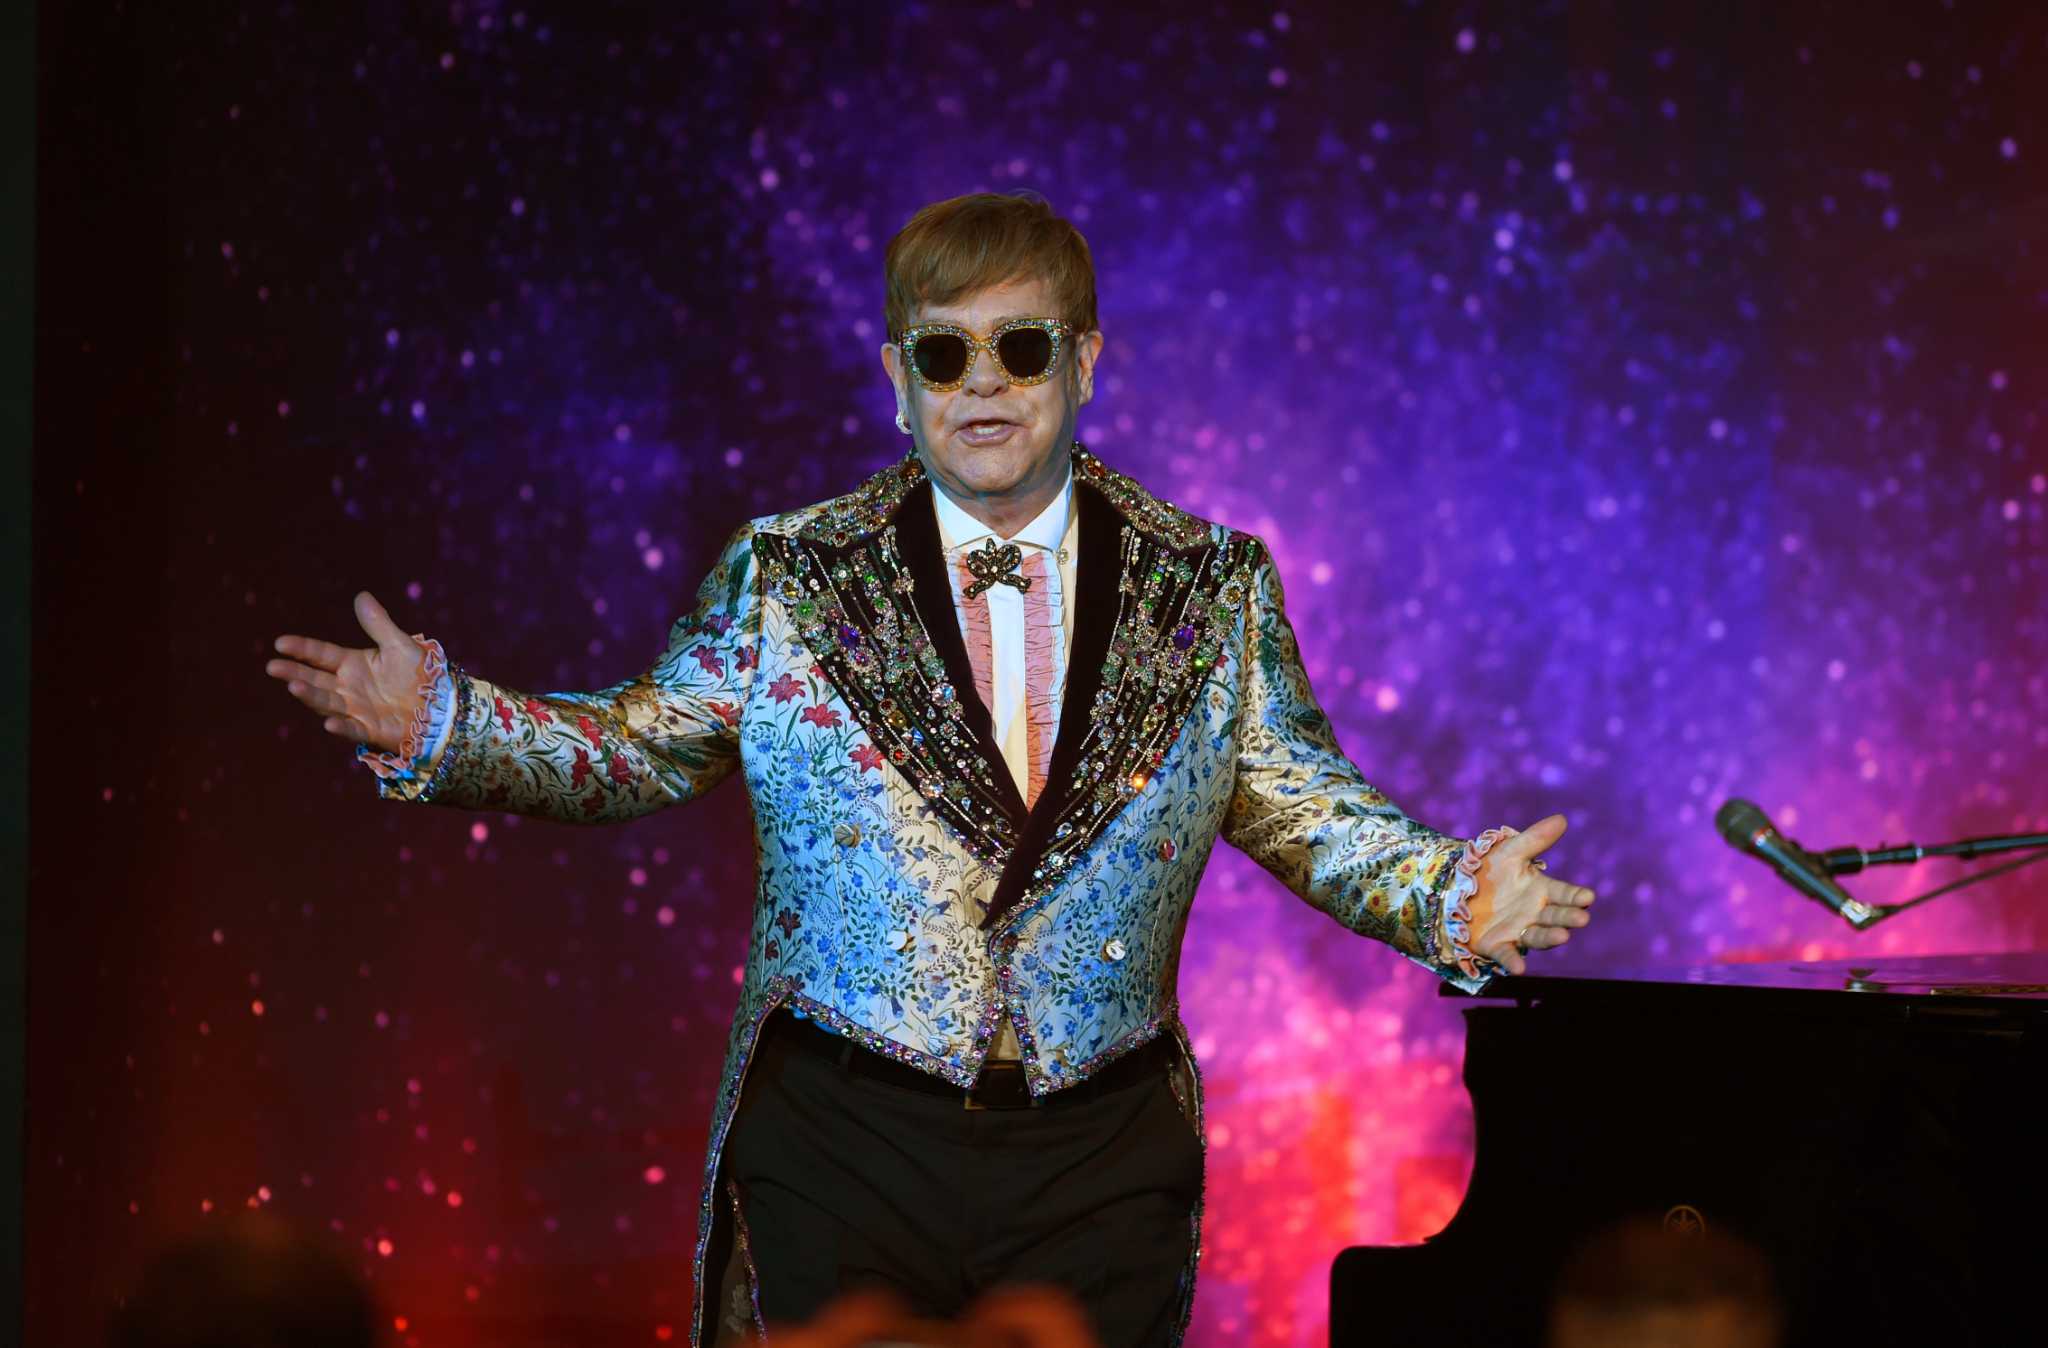 Goodbye Yellow Brick Road' at 50: Elton John's enduring queer legacy